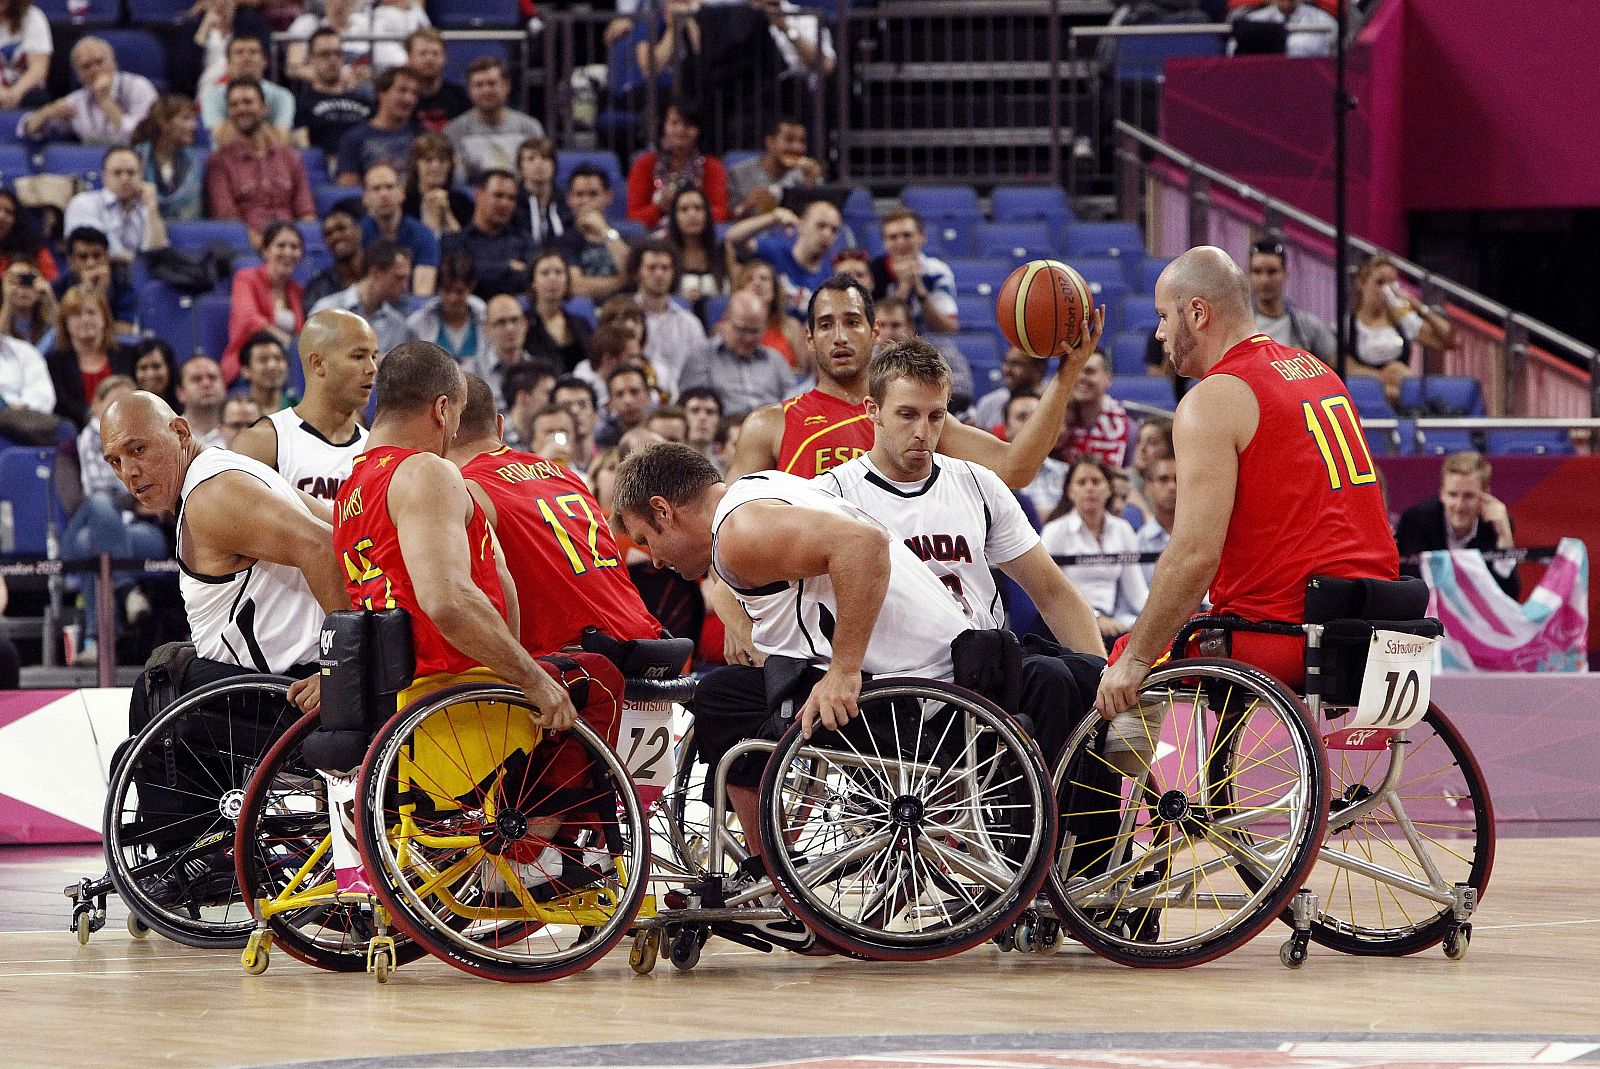 Jugadores de las selecciones de España y Canadá durante el partido de baloncesto disputado en la sexta jornada de competición de los Juegos Paralímpicos Londres 2012.